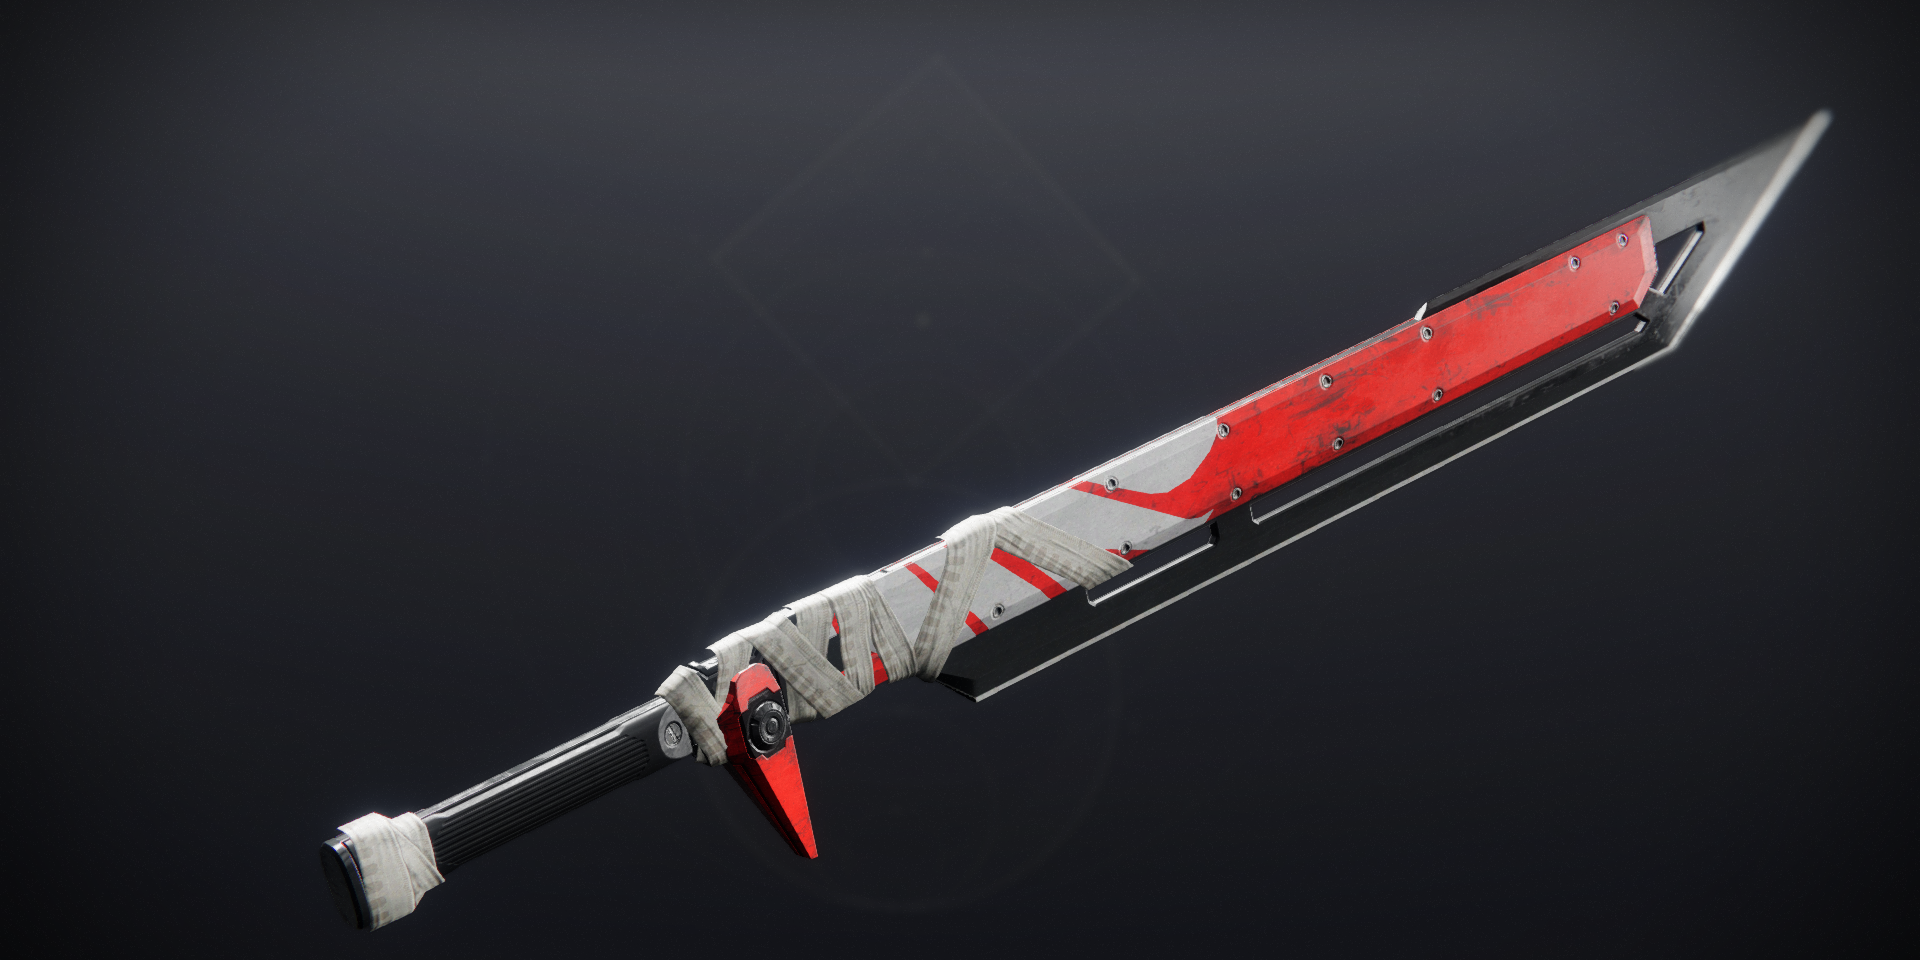 Destiny 2 Top 10 Swords Ranked - coolest looking sword in roblox models